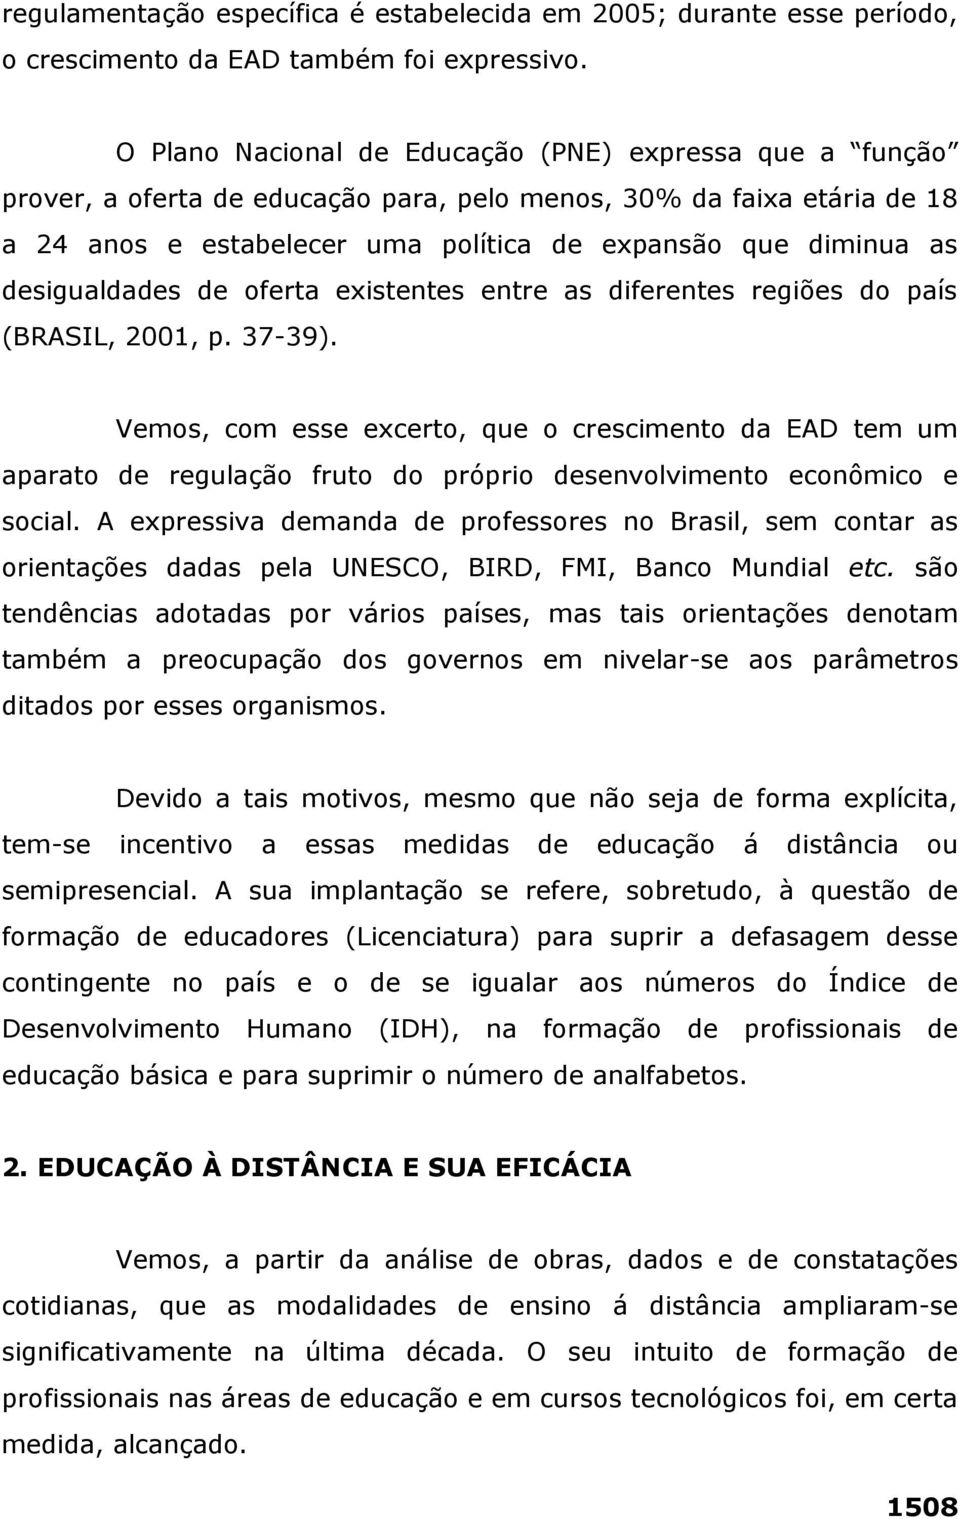 desigualdades de oferta existentes entre as diferentes regiões do país (BRASIL, 2001, p. 37-39).